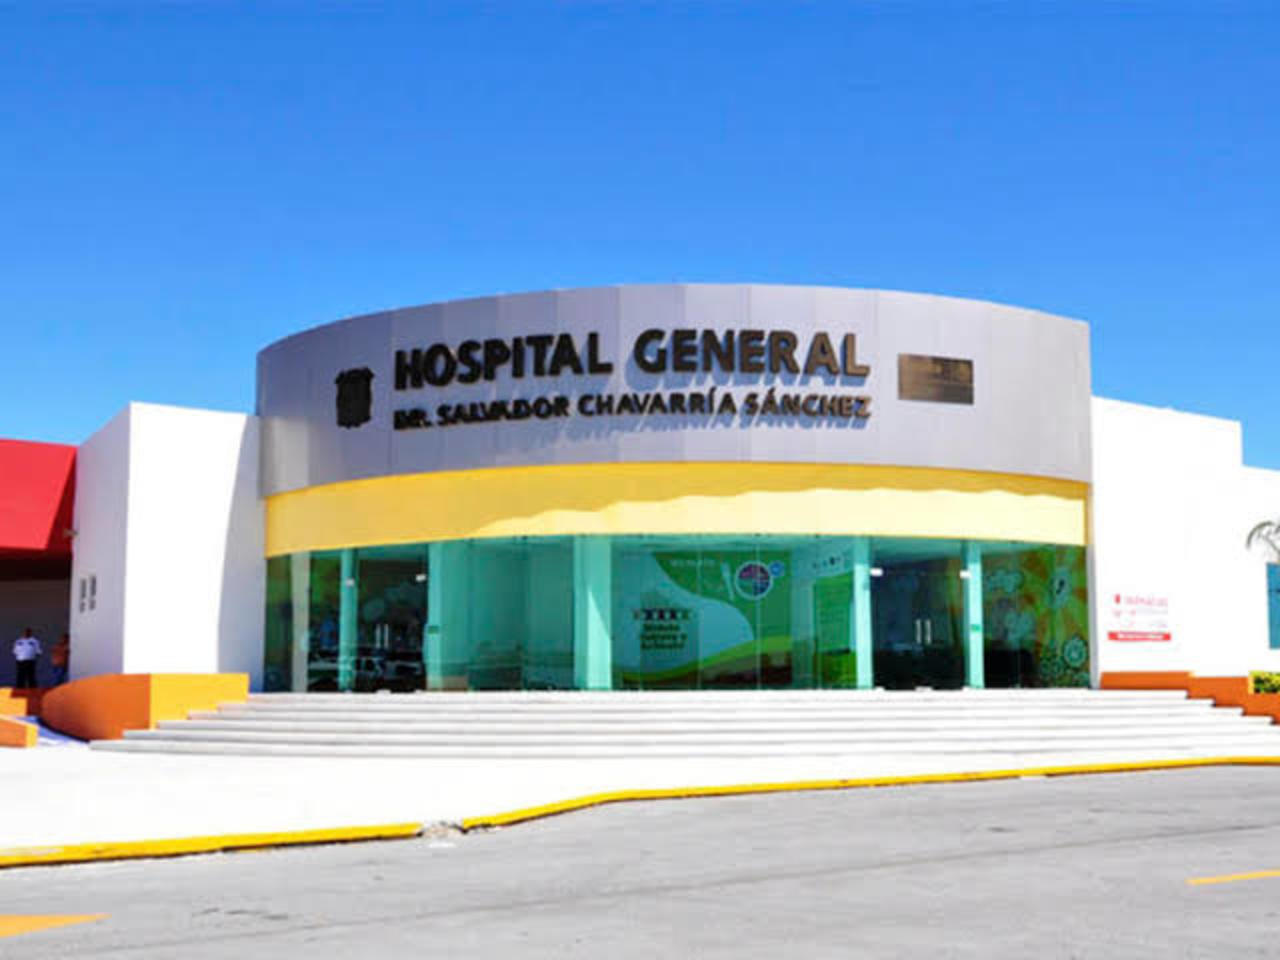 Tras concluir la autopsia de ley que se le práctico al cuerpo del médico que fue localizado sin vida en el Hospital General 'D. Salvador Chavarría Sánchez'. (ARCHIVO) 
